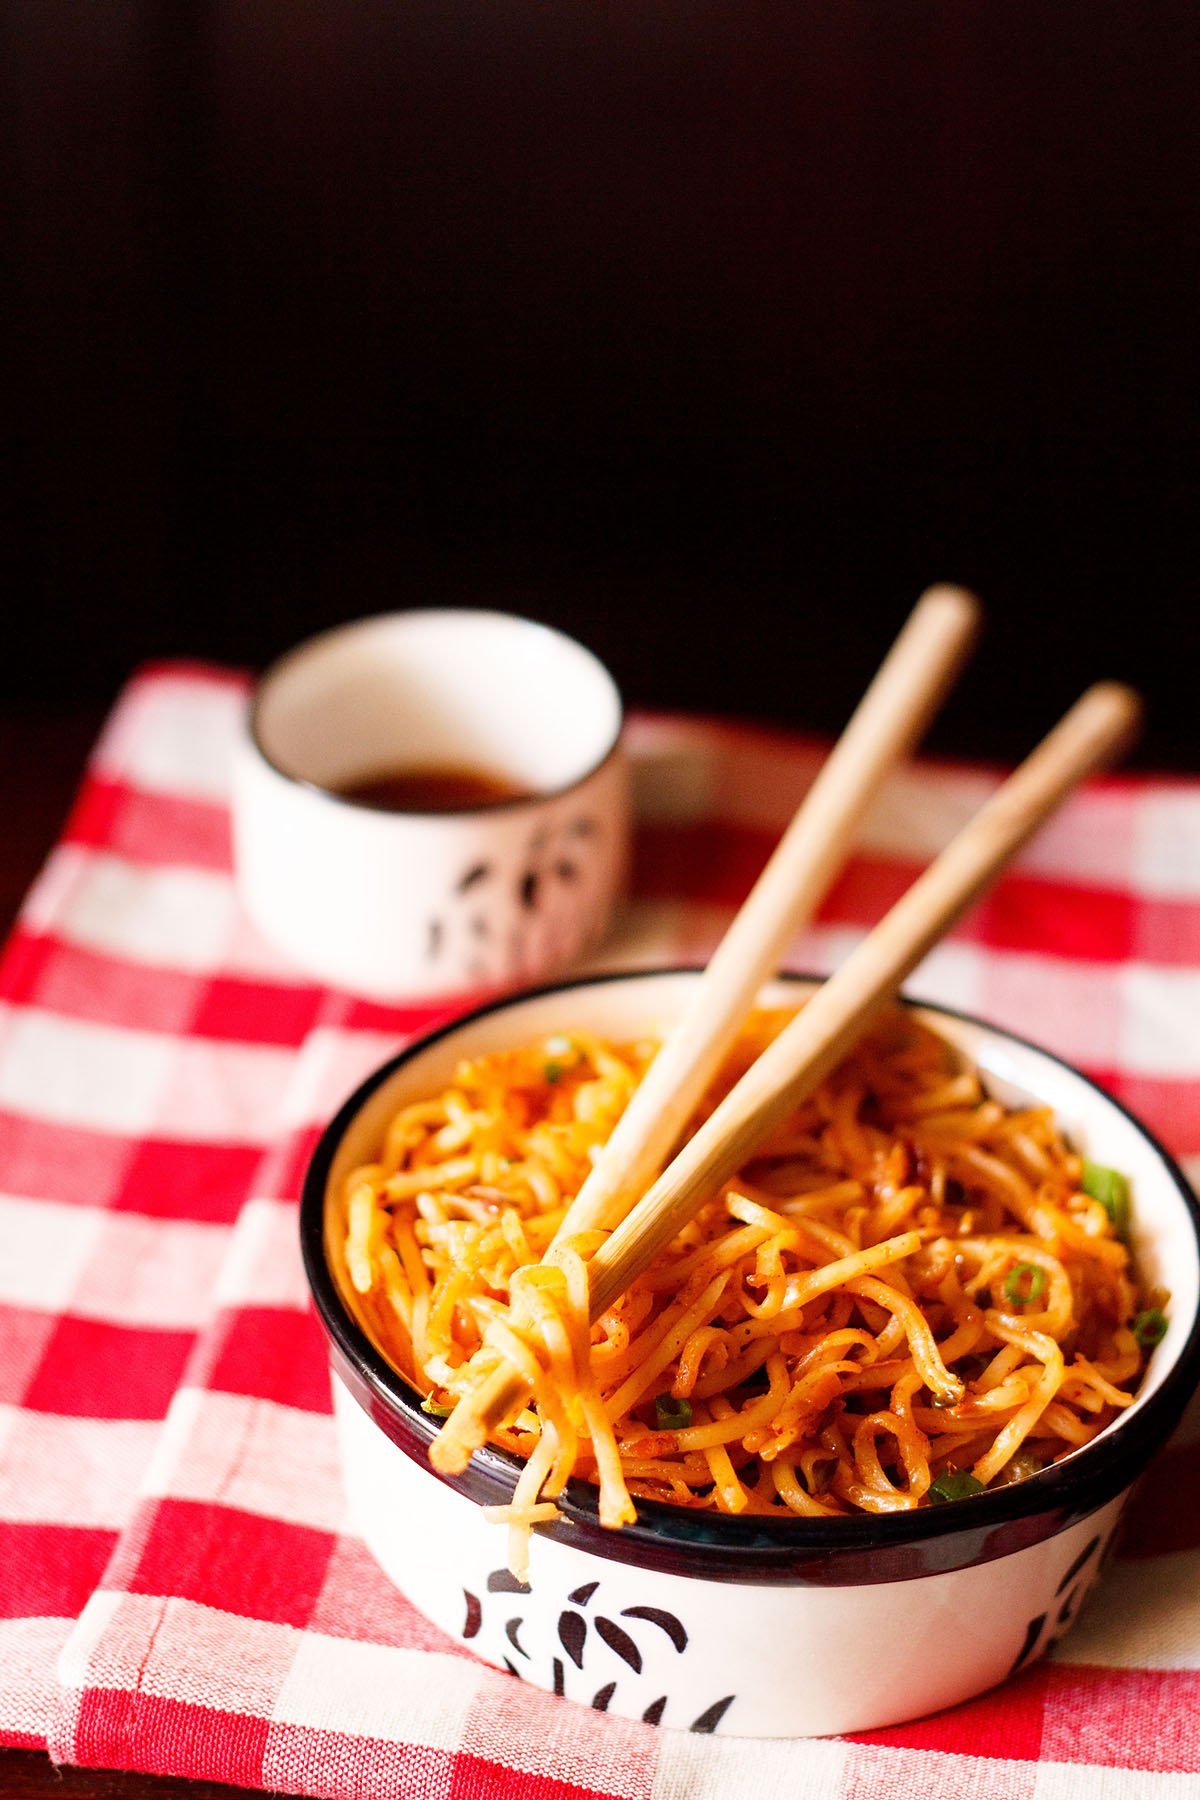 What Are Szechuan Noodles?